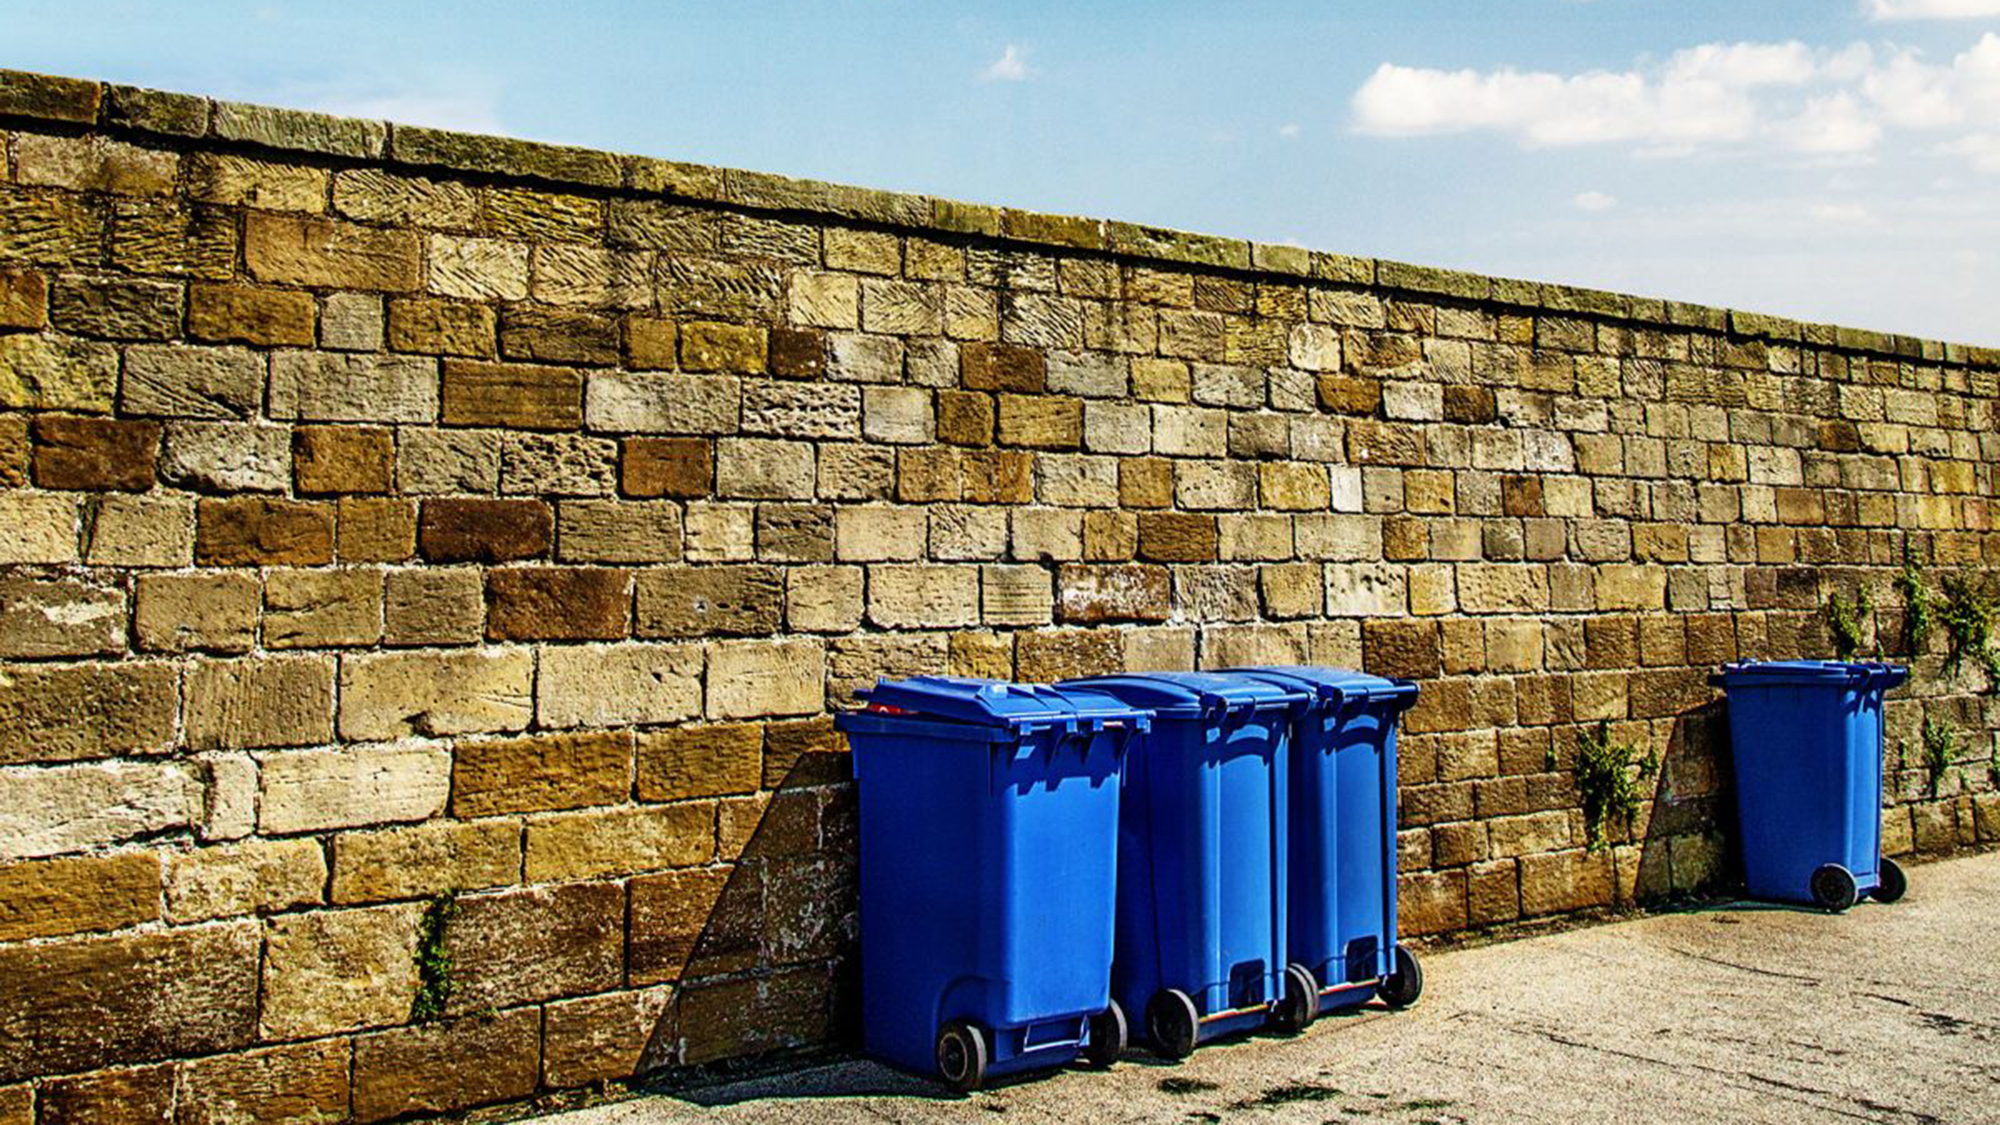 Municipal recycling bins